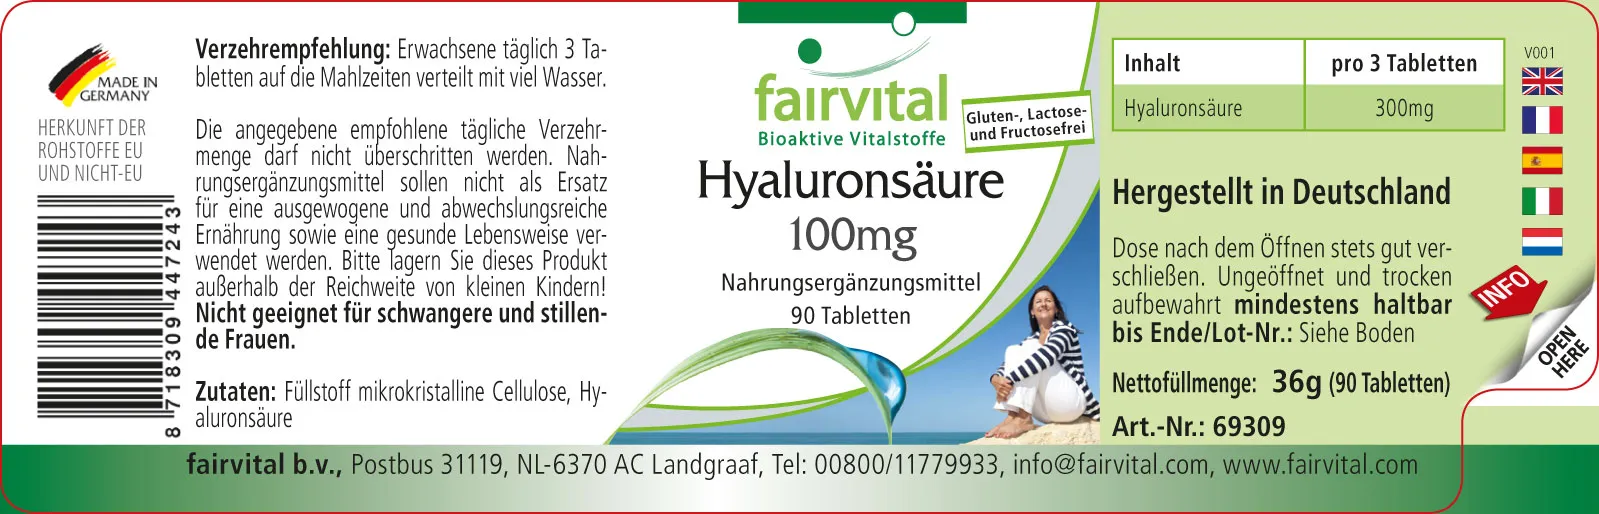 Ácido hialurónico 100mg - 90 comprimidos